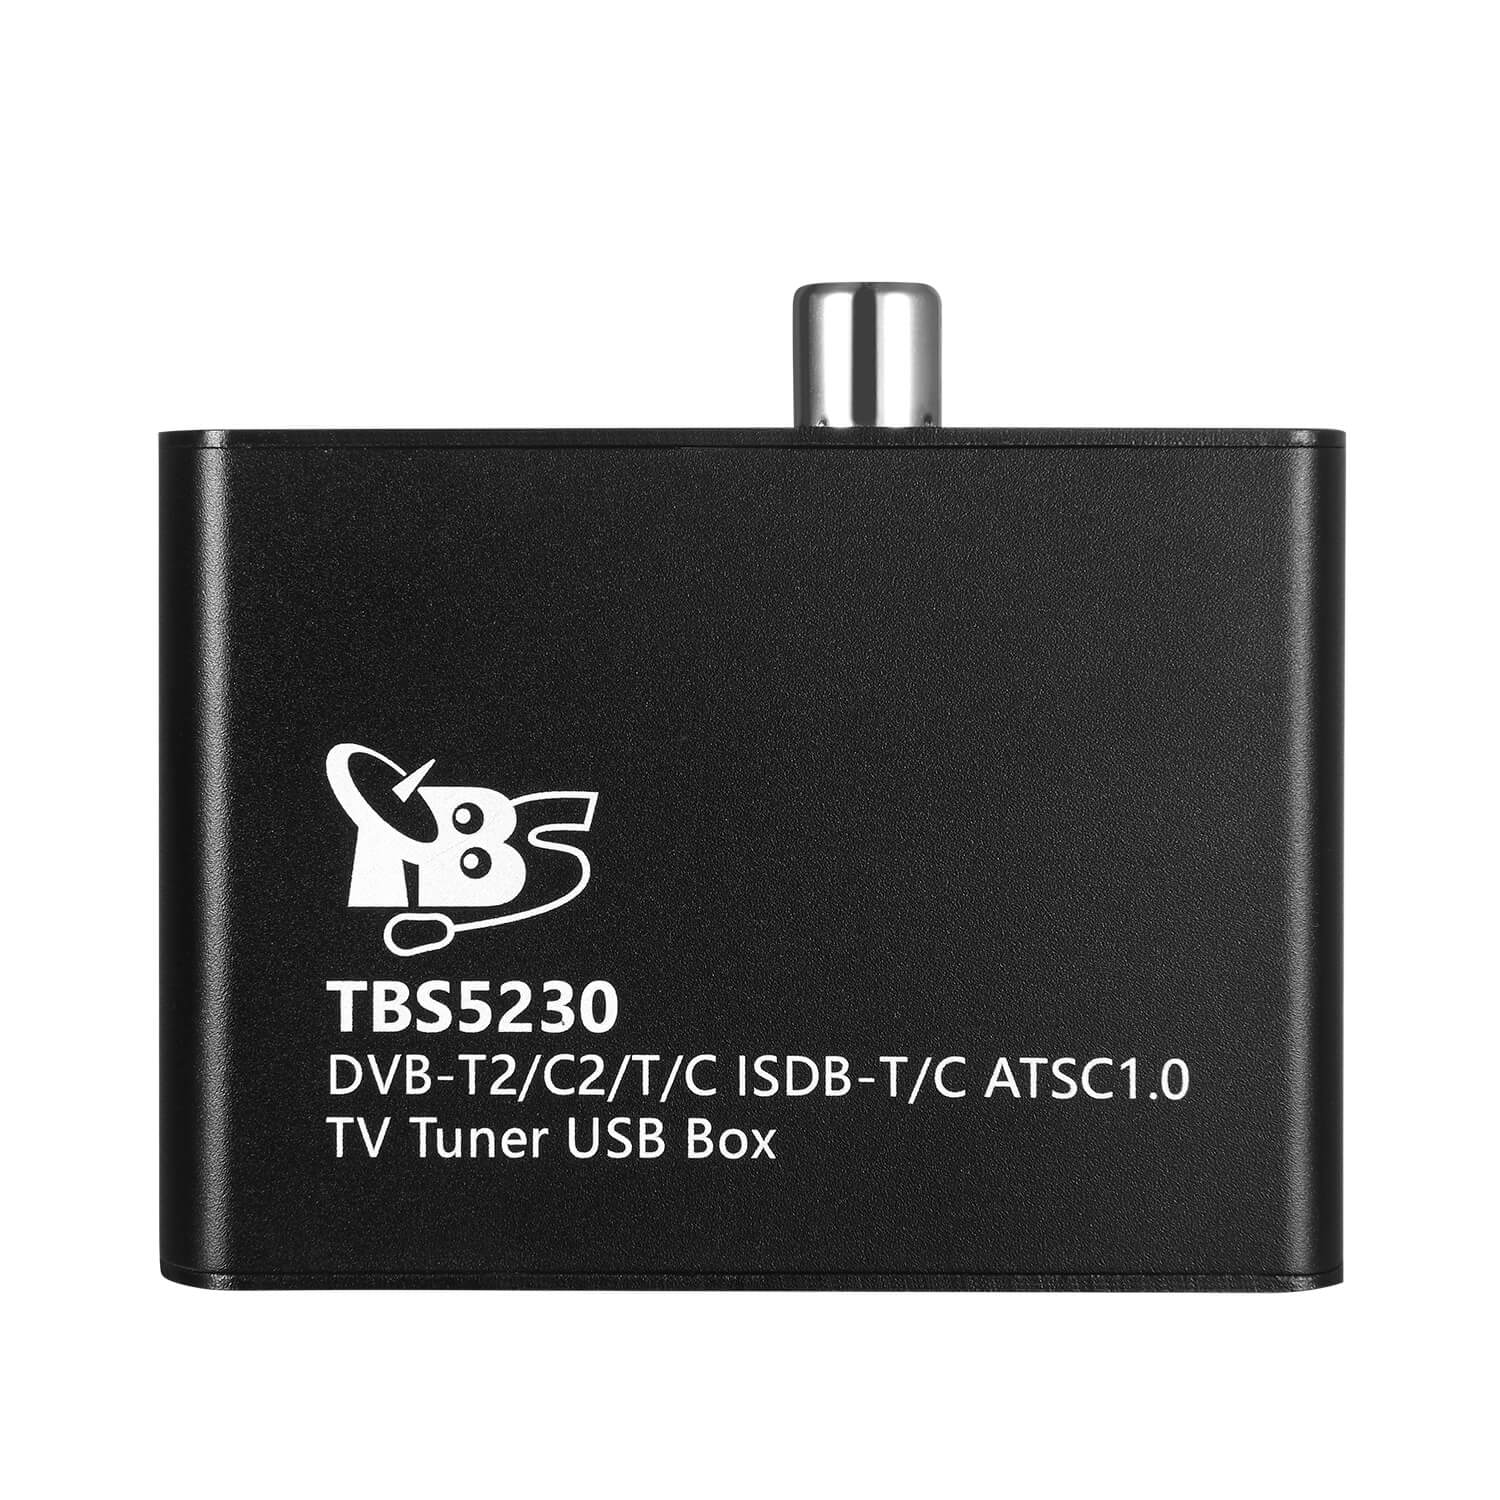 TBS DVB-T2/C2/T/C M.2 CARD